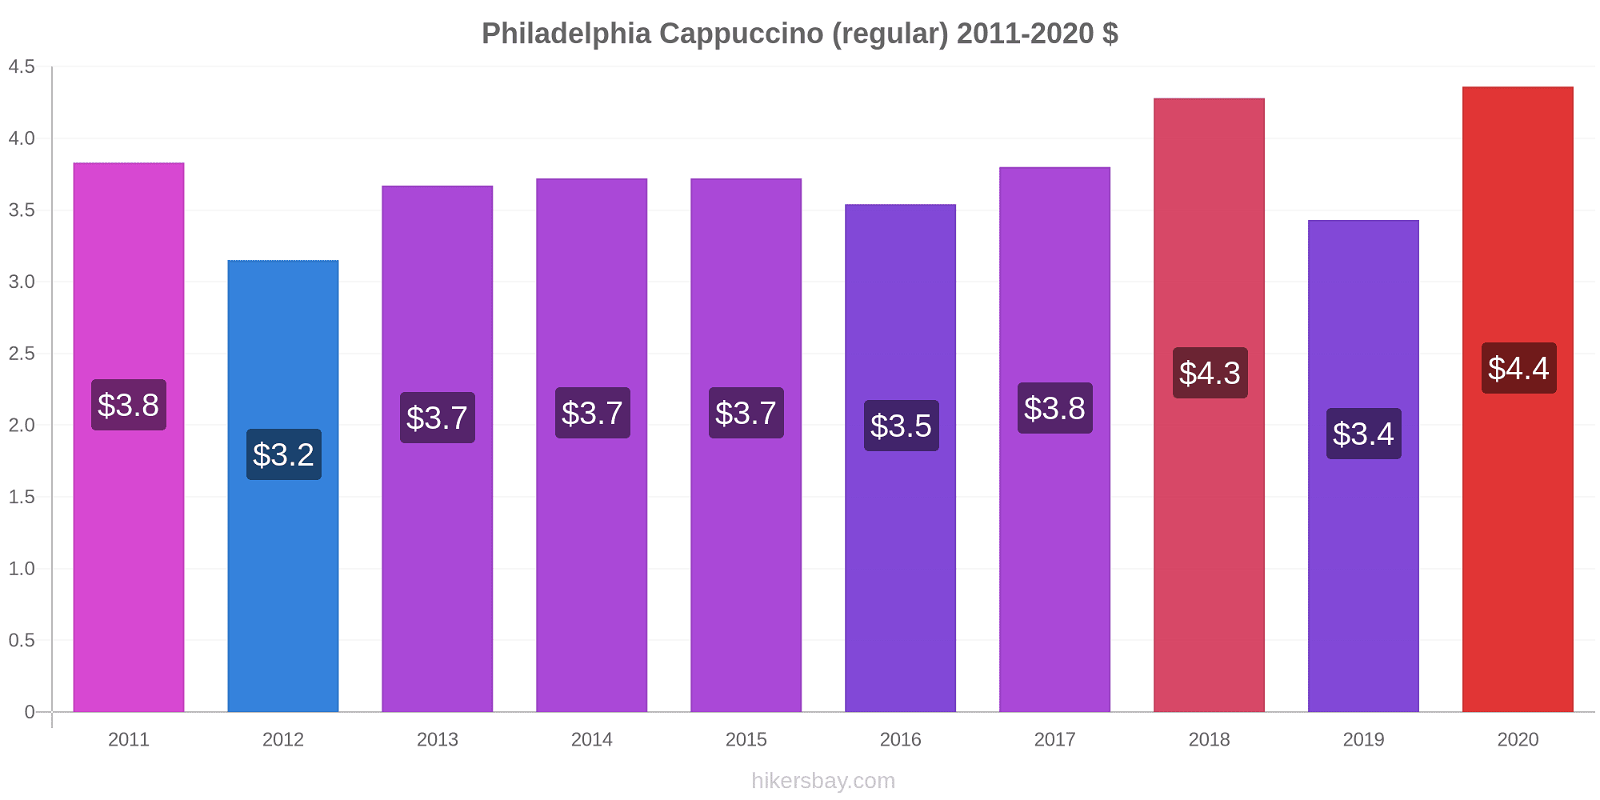 Philadelphia price changes Cappuccino (regular) hikersbay.com